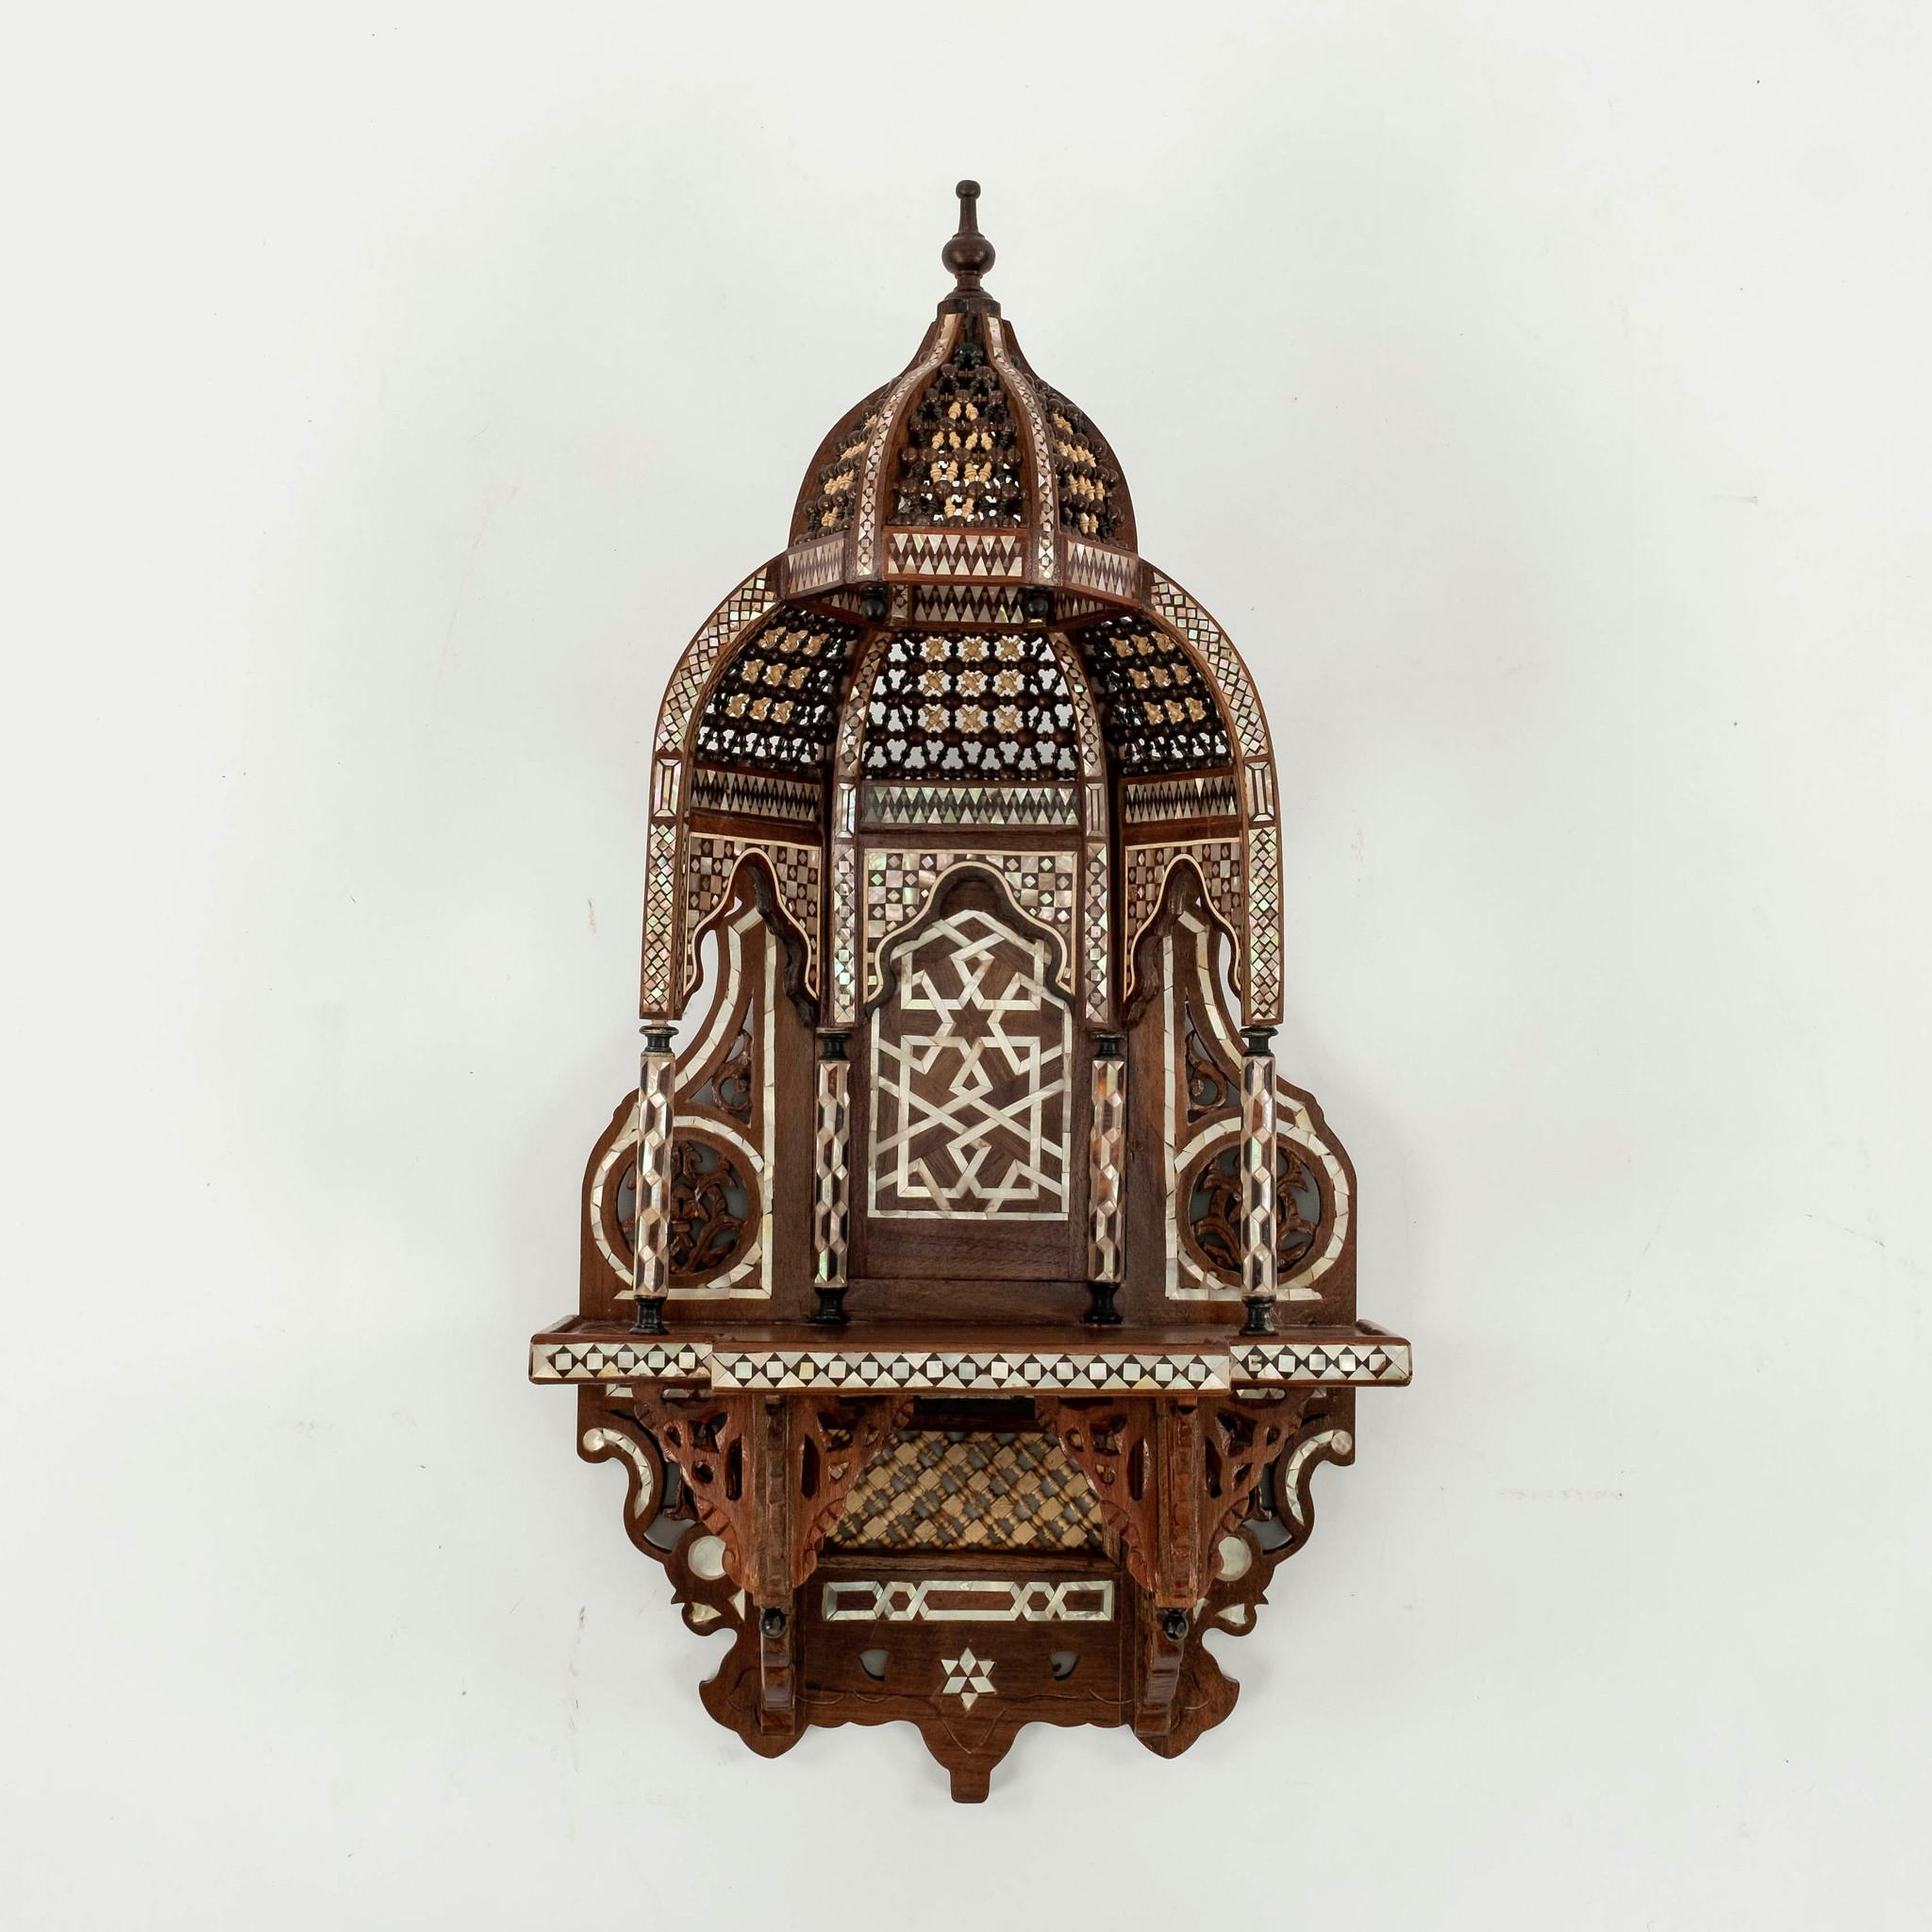 Paar Wandregale aus marokkanischem Holz und Perlmutt aus den 1920er Jahren oder früher. Diese wundervollen Múdejar-Designregale zeichnen sich durch abstrakte Geometrie, Hufeisen- und Mehrbögen und wabenförmige Gewölbe aus, die Muqarnas genannt